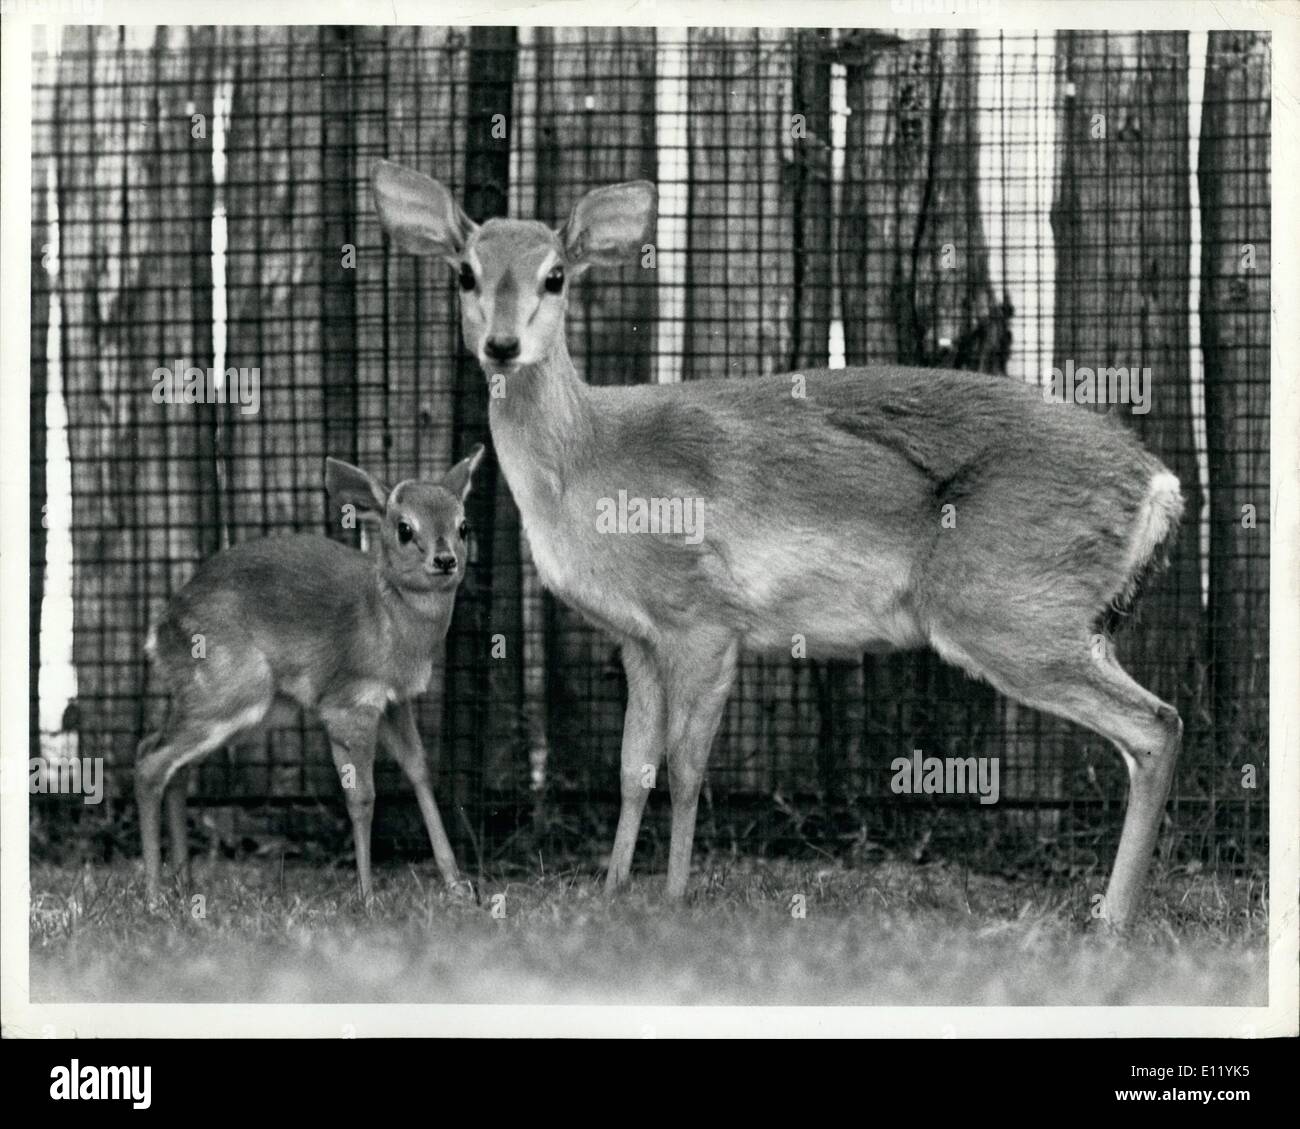 1. Januar 1981 - A Tiny Zulu Suni geboren an der San Diego Wild Animal Park 8. Januar 1981 Posen mit seiner Mutter in ihrem Gehege Nairobi Dorf an die 1.800 Hektar großen Tier-und Pflanzenwelt bewahren. Suni sind die weltweit kleinsten Arten von Antilopen mit Erwachsenen nur 12-16 Zoll (30-40 cm) hoch an den Schultern und einem Gewicht von ca. 18 Pfund (8 kg). Das Baby steht nur 7 Zoll (17 cm) groß. die Kastanie-farbigen Antilope findet man überall in Südafrika aber sind selten in Gefangenschaft Stockfoto